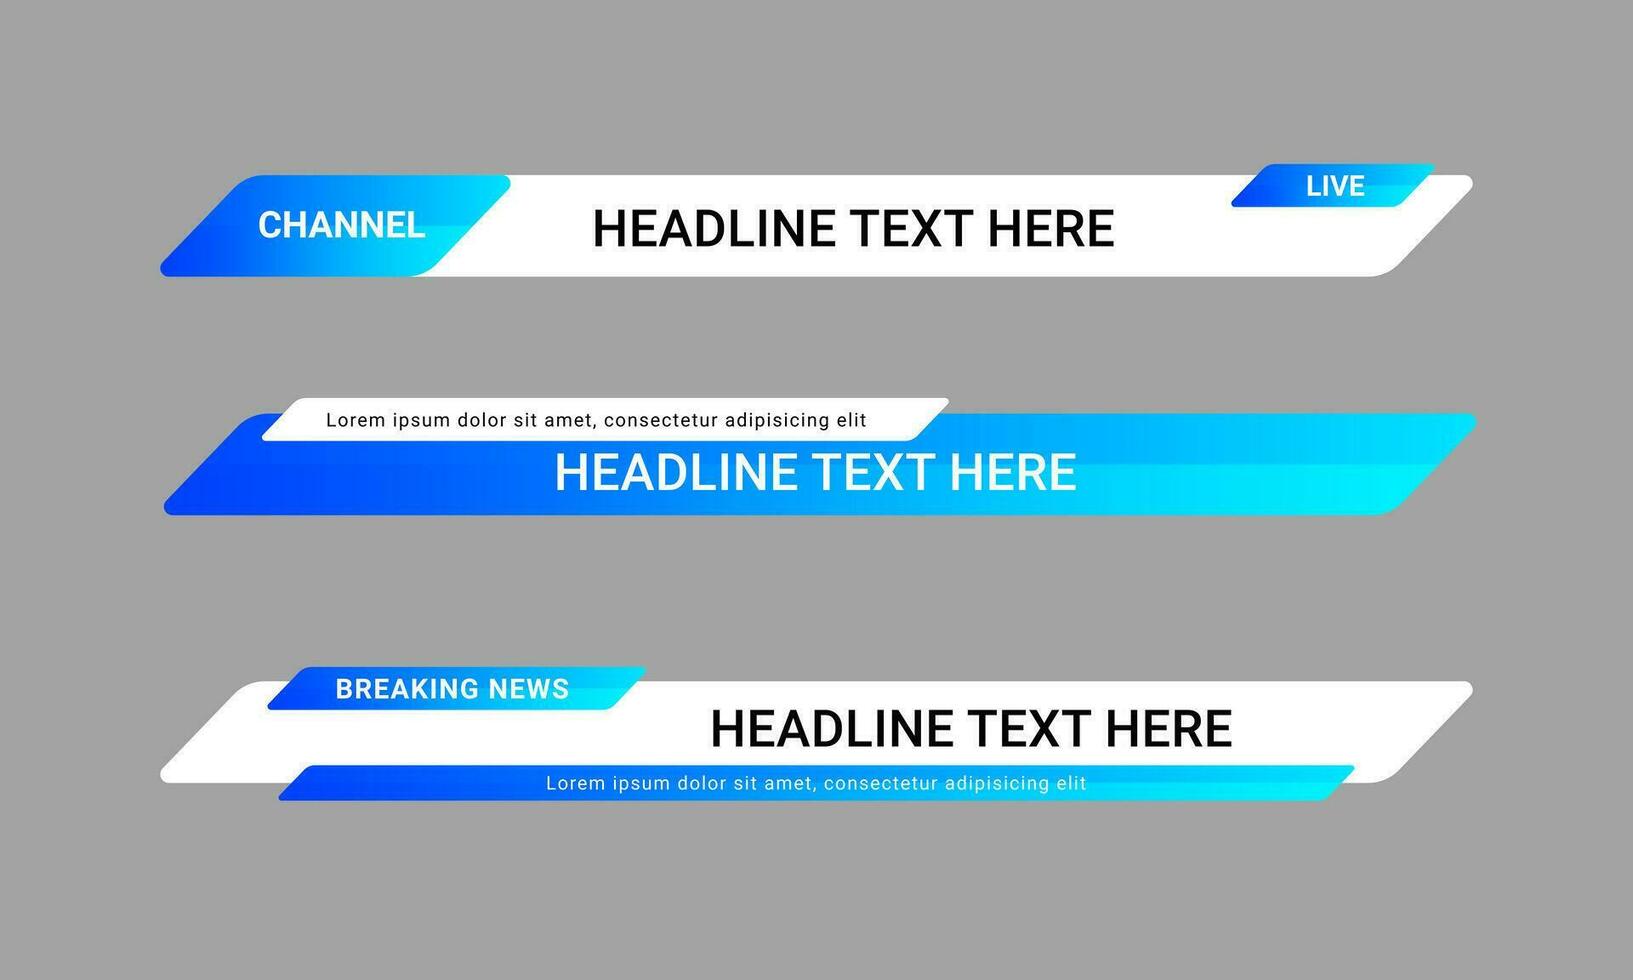 ensemble de modèles de bannières du tiers inférieur d'actualités diffusées pour les chaînes de télévision, de vidéo et de médias. vecteur de conception de mise en page de barre de titre futuriste